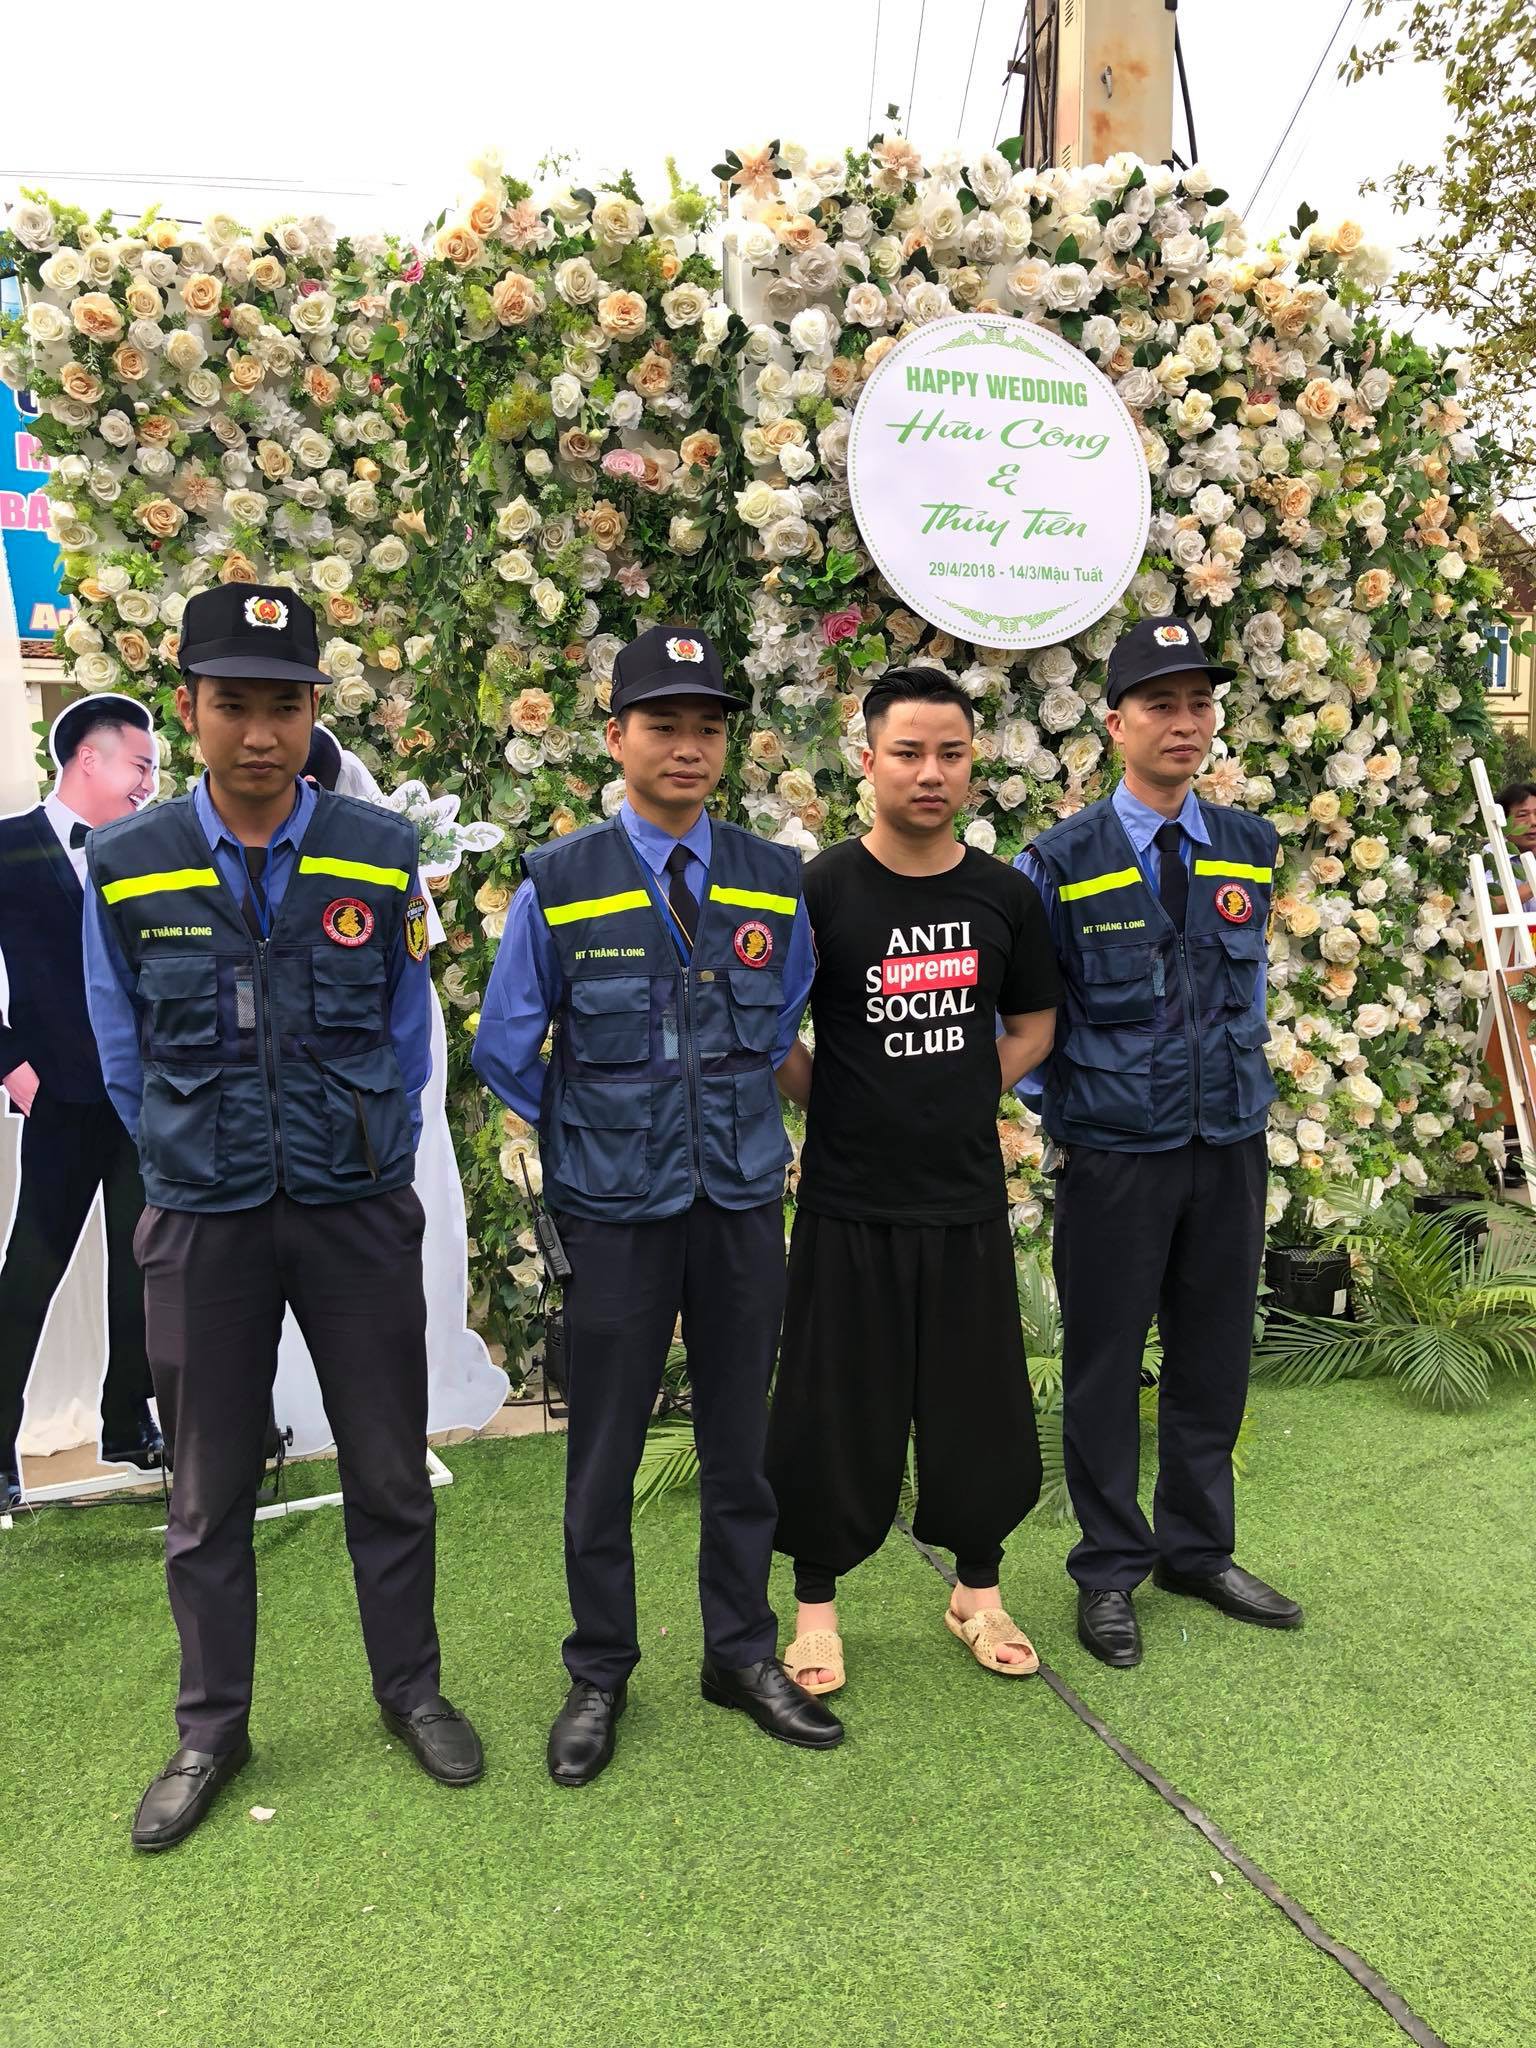 Mr. Đàm, Lam Trường lặn lội về tận quê Hữu Công dự đám cưới, có cả dàn vệ sĩ thắt chặt an ninh ở sự kiện - Ảnh 12.